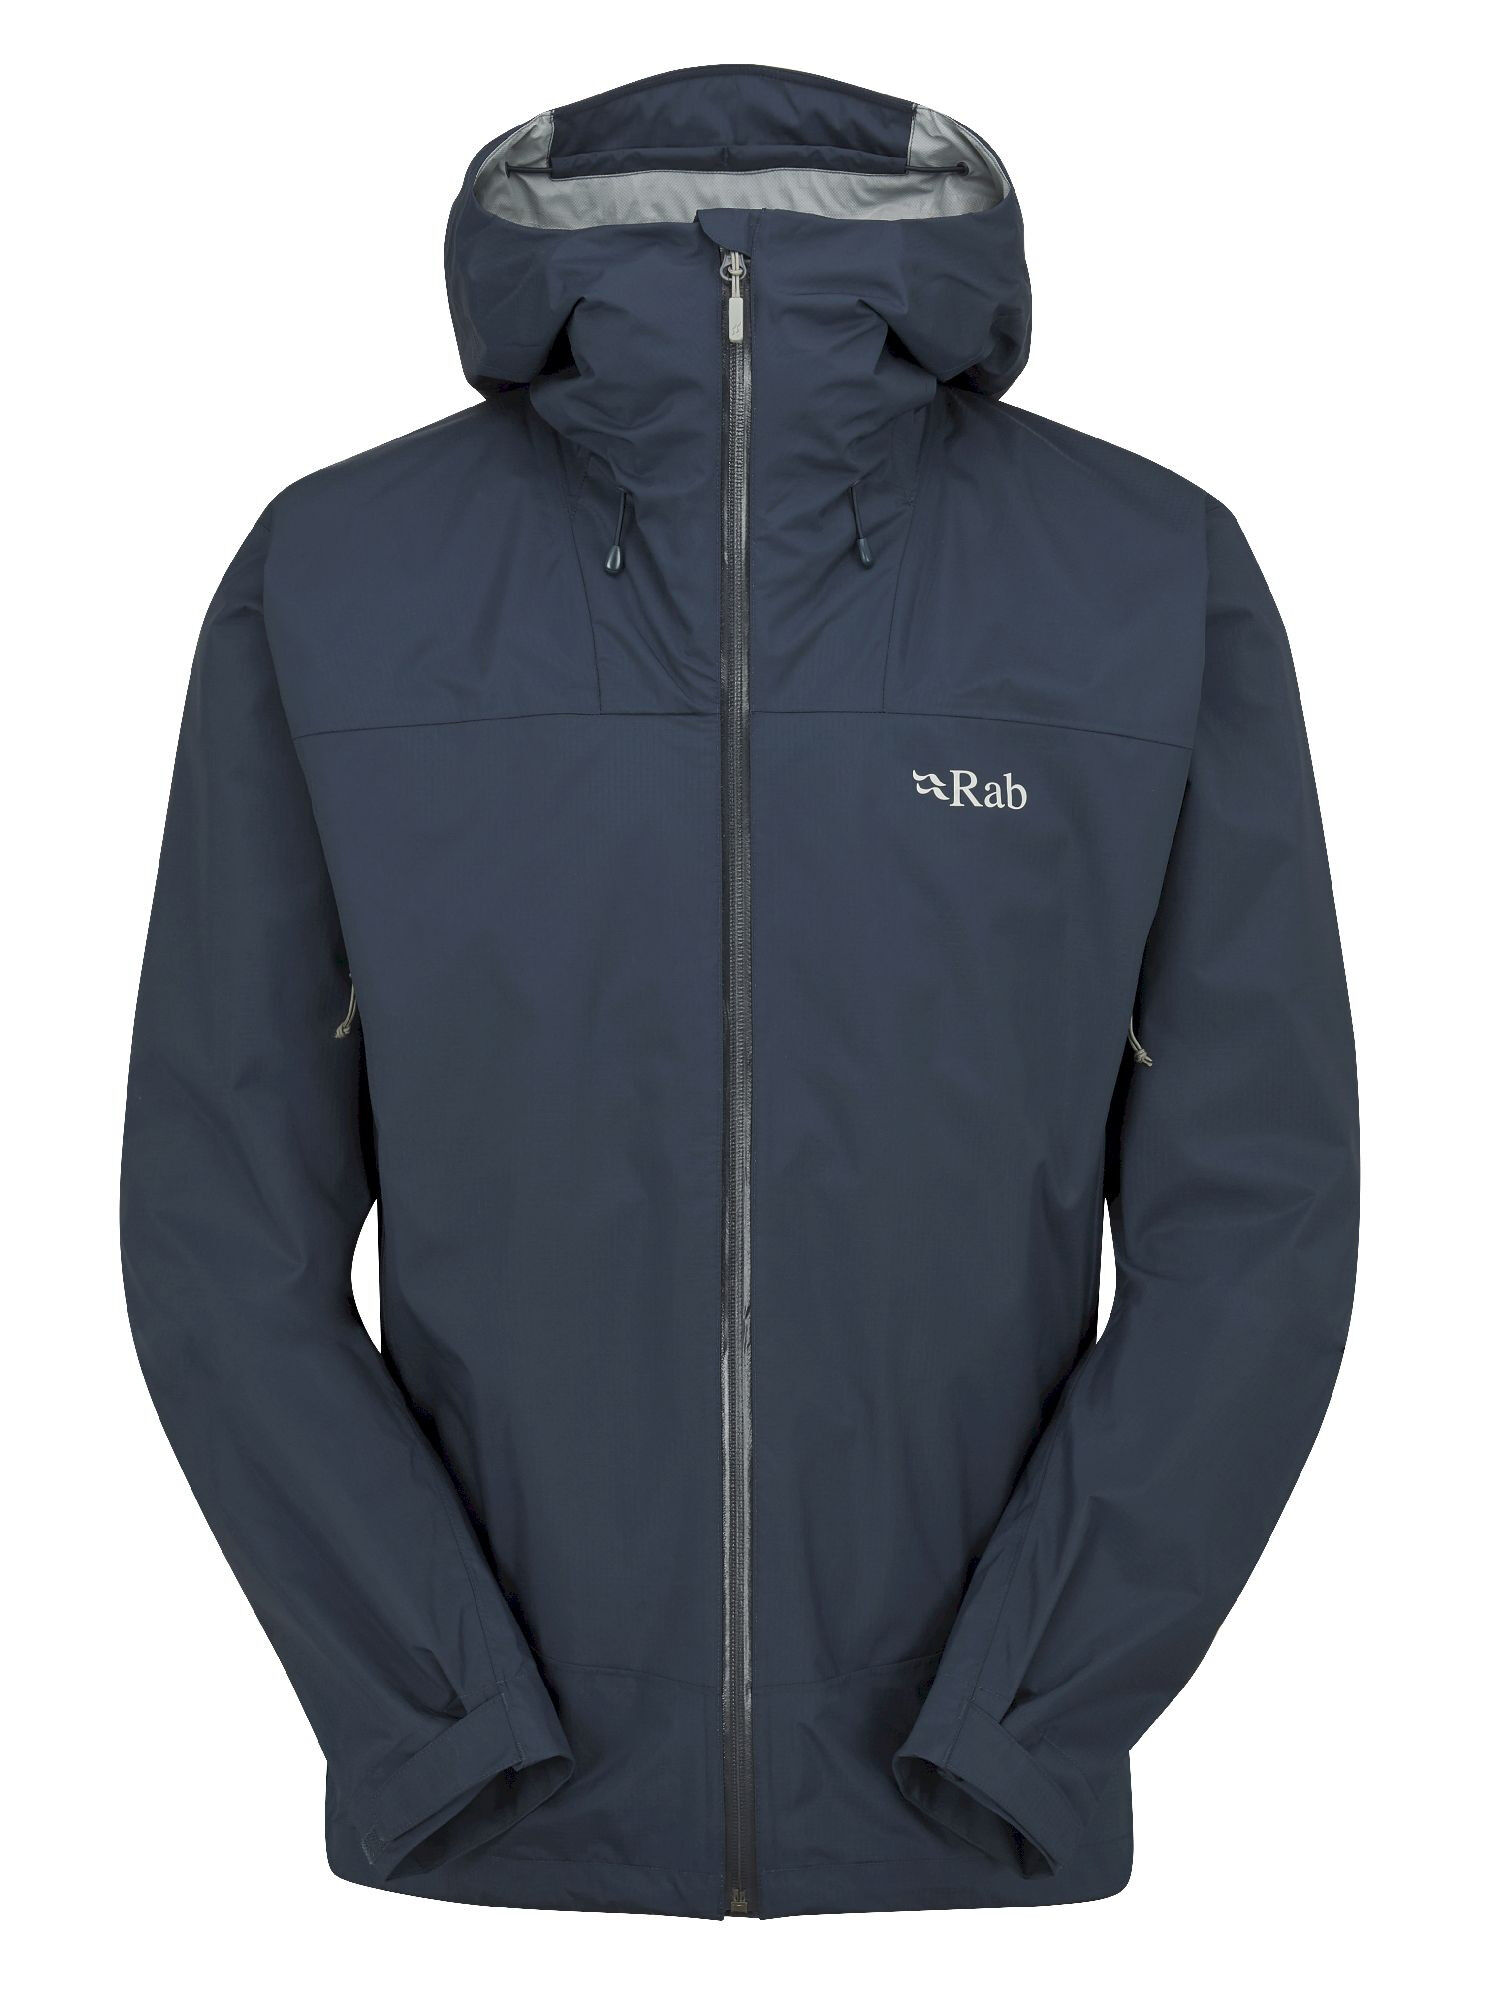 Rab Downpour Plus 2.0 Jacket - Waterproof jacket - Men's